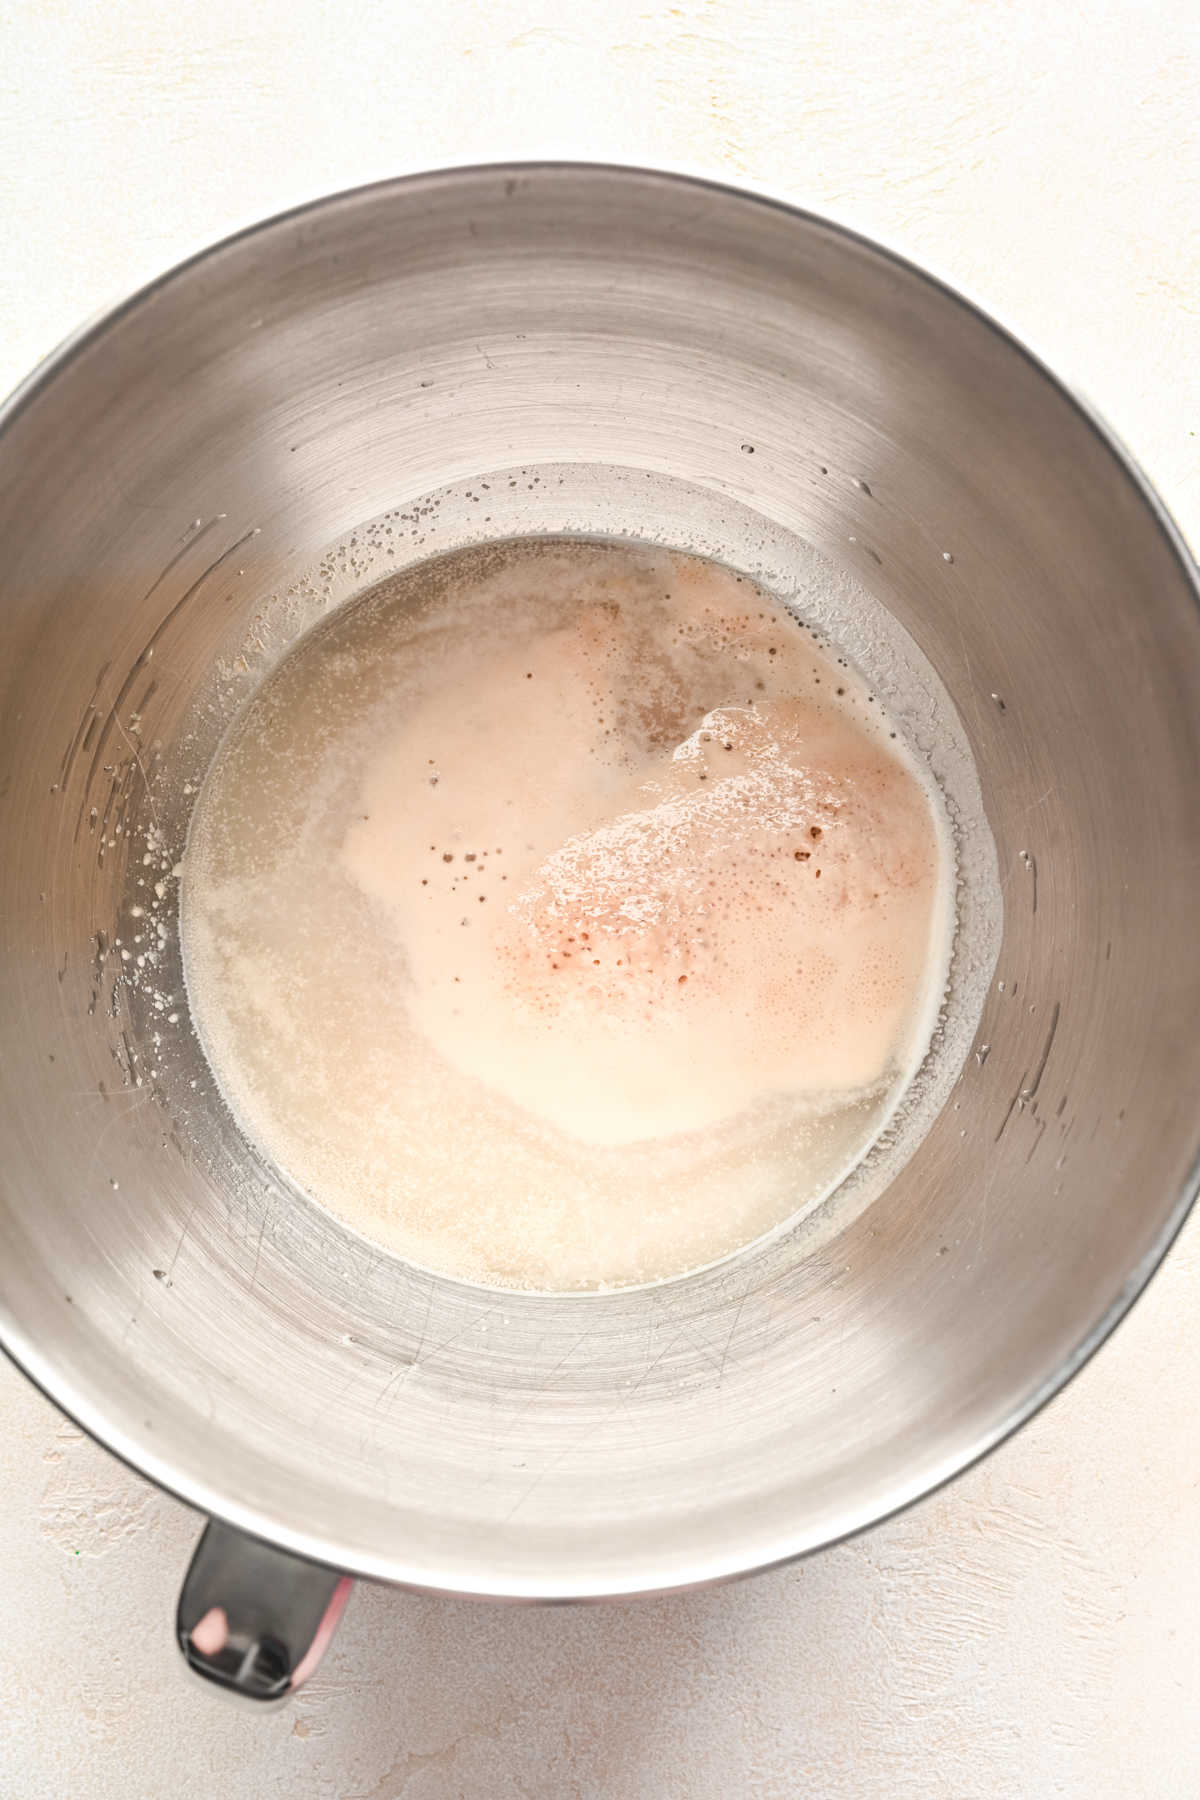 Foamy yeast in water.